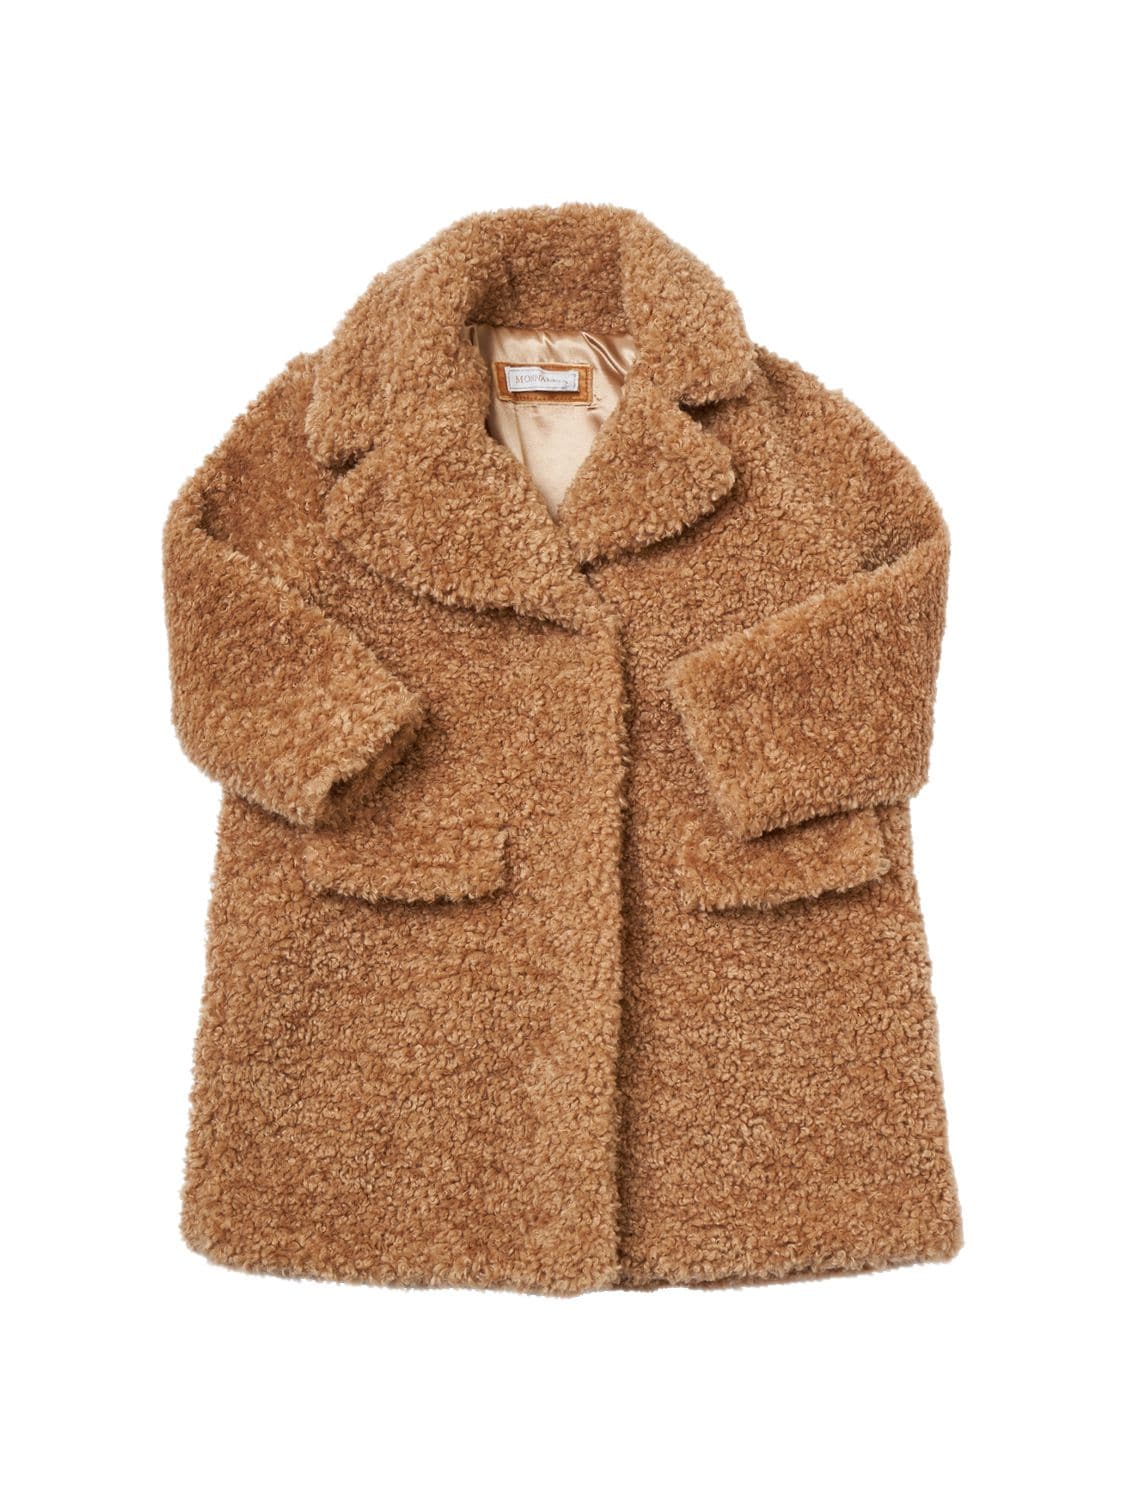 Monnalisa Kids' Teddy Coat In Brown